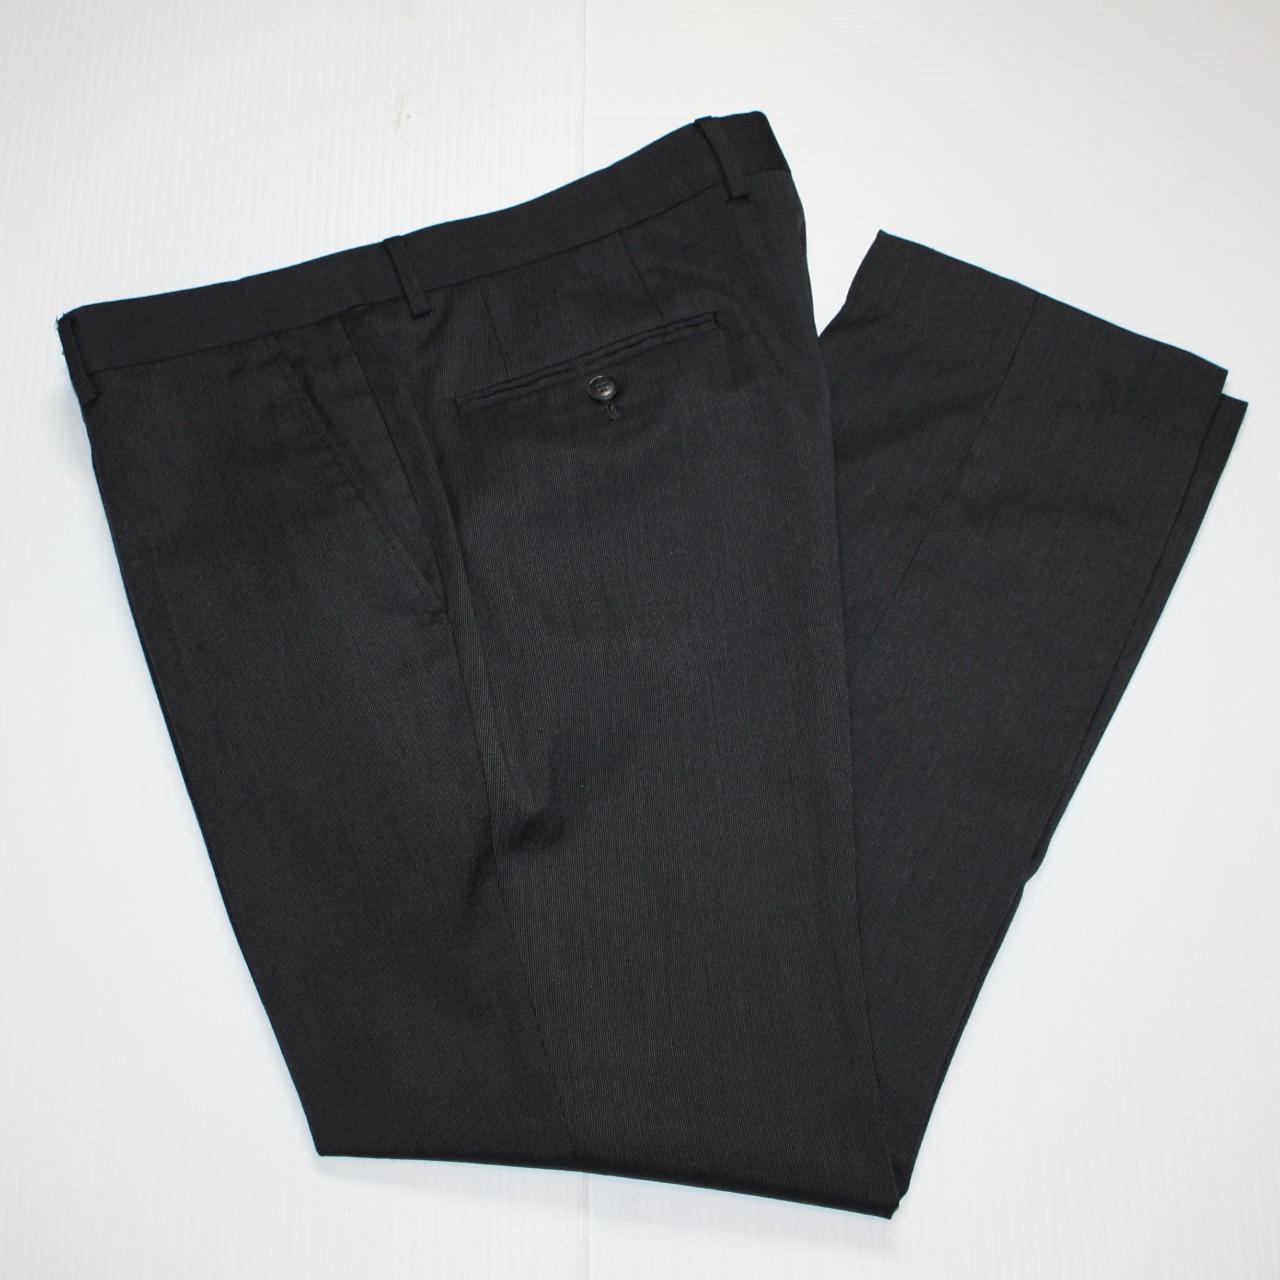 Mexx Men's Black Suit Pants size Slim 36 Inseam... - Depop